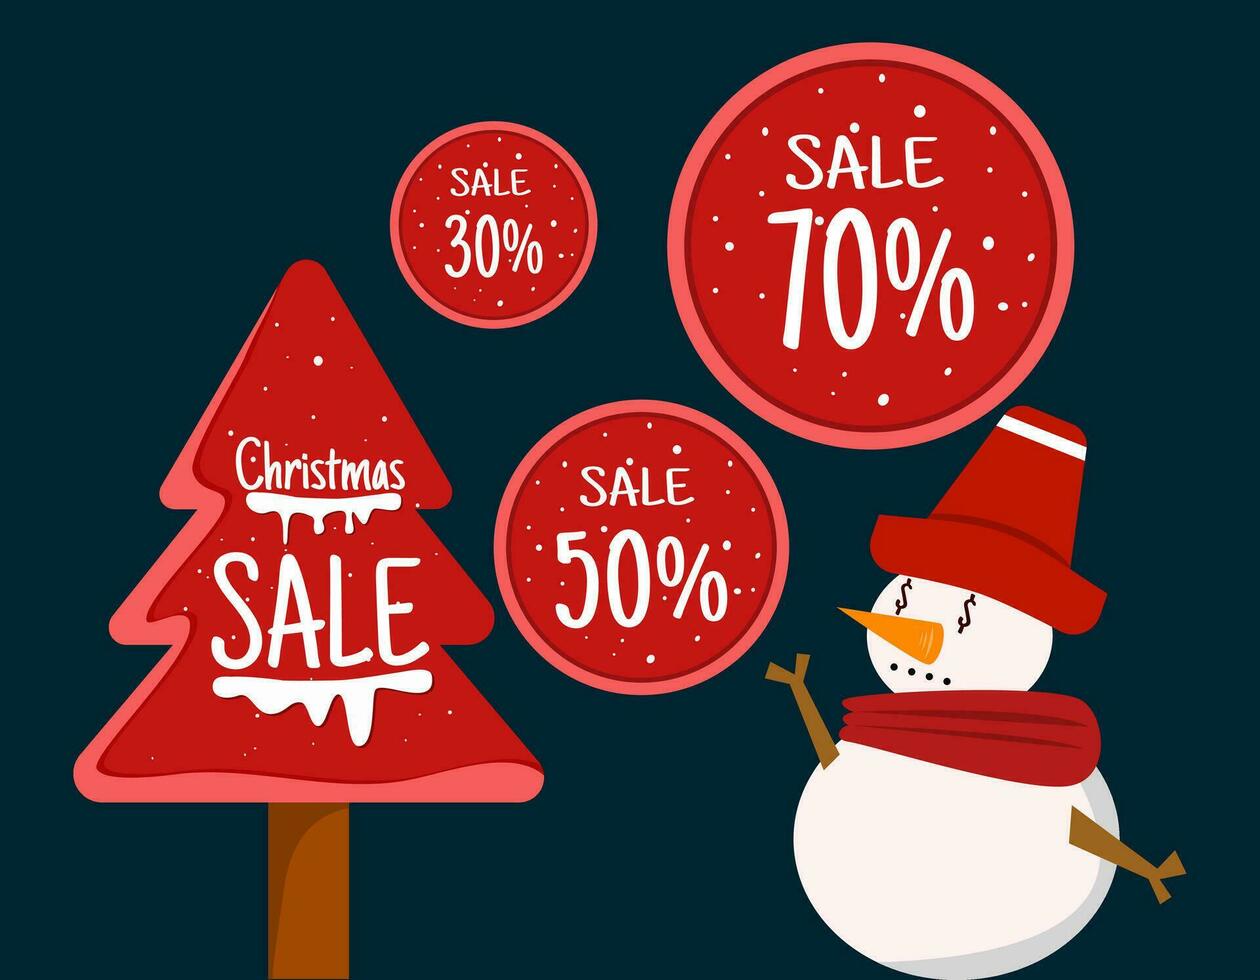 röd försäljning märka vektor, dekorerad med röd jul träd och jul försäljning text, Utsmyckad med söt snögubbe, vektor illustration.